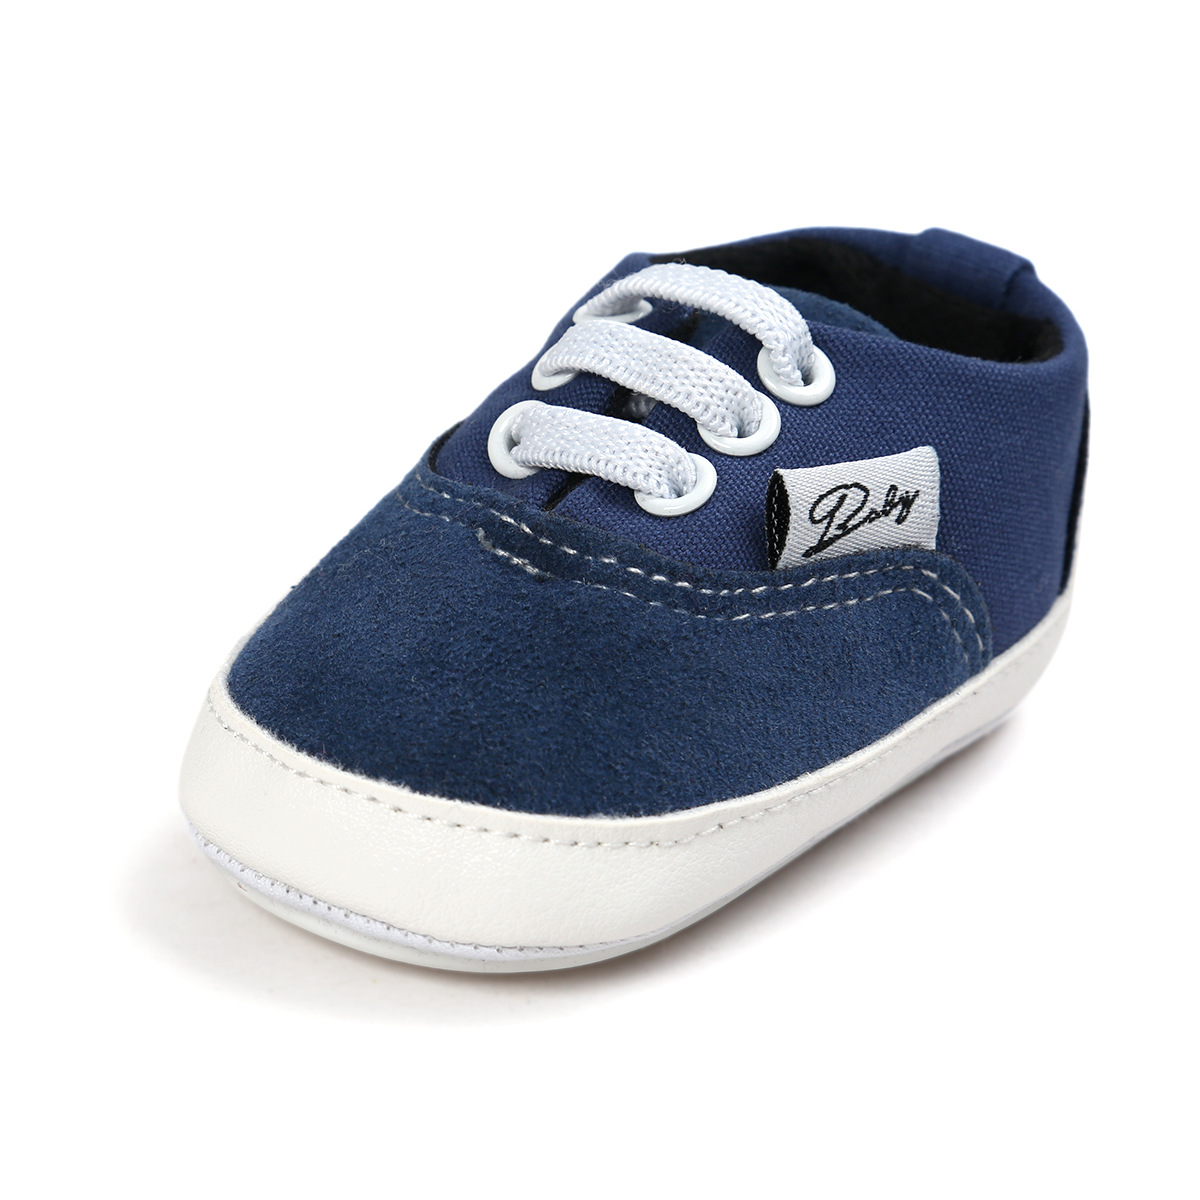 Chaussures bébé en coton - Ref 3436710 Image 100